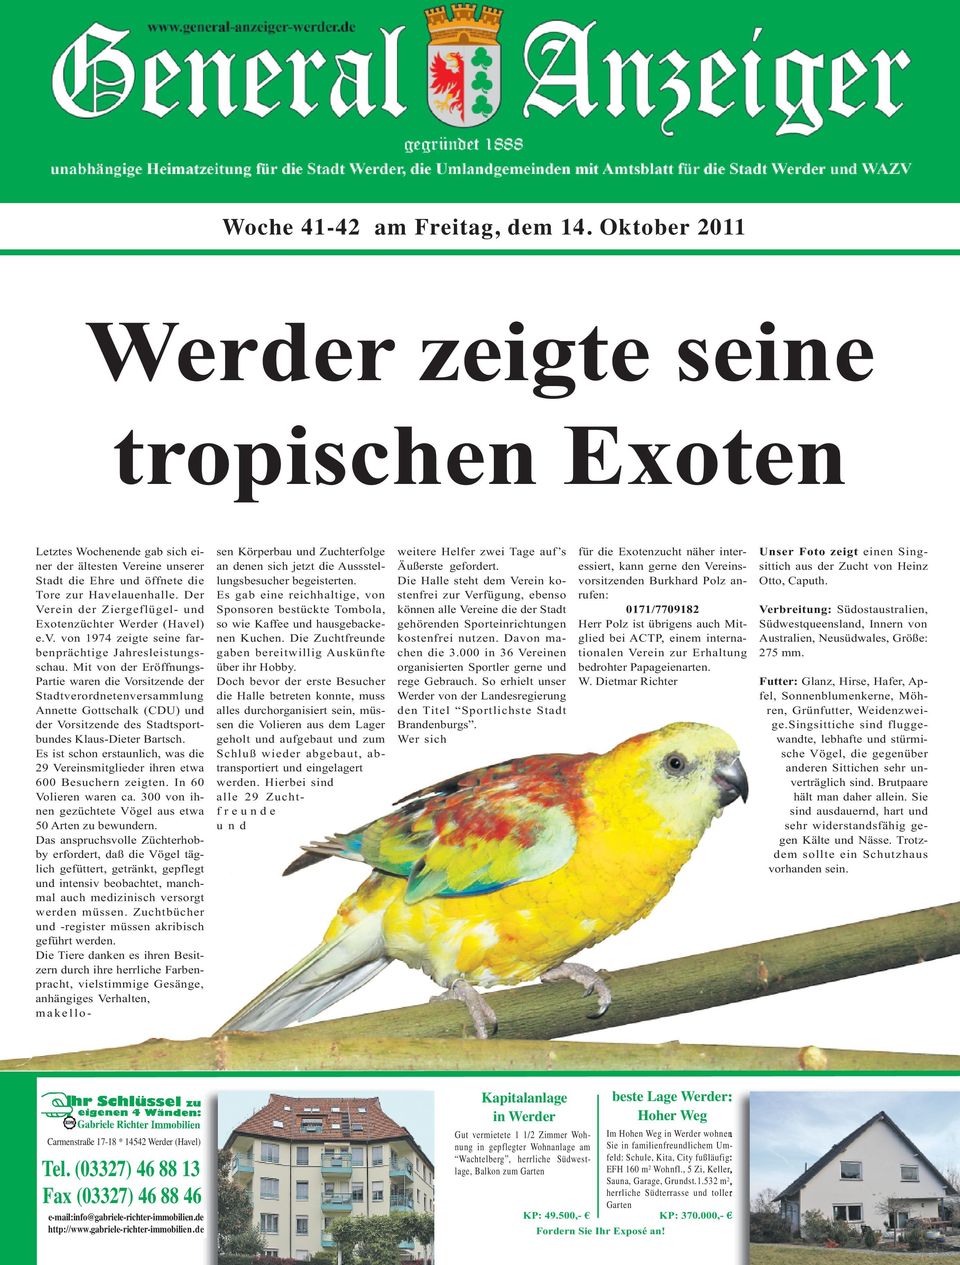 Der Verein der Ziergeflügel- und Exotenzüchter Werder (Havel) e.v. von 1974 zeigte seine farbenprächtige Jahresleistungsschau.